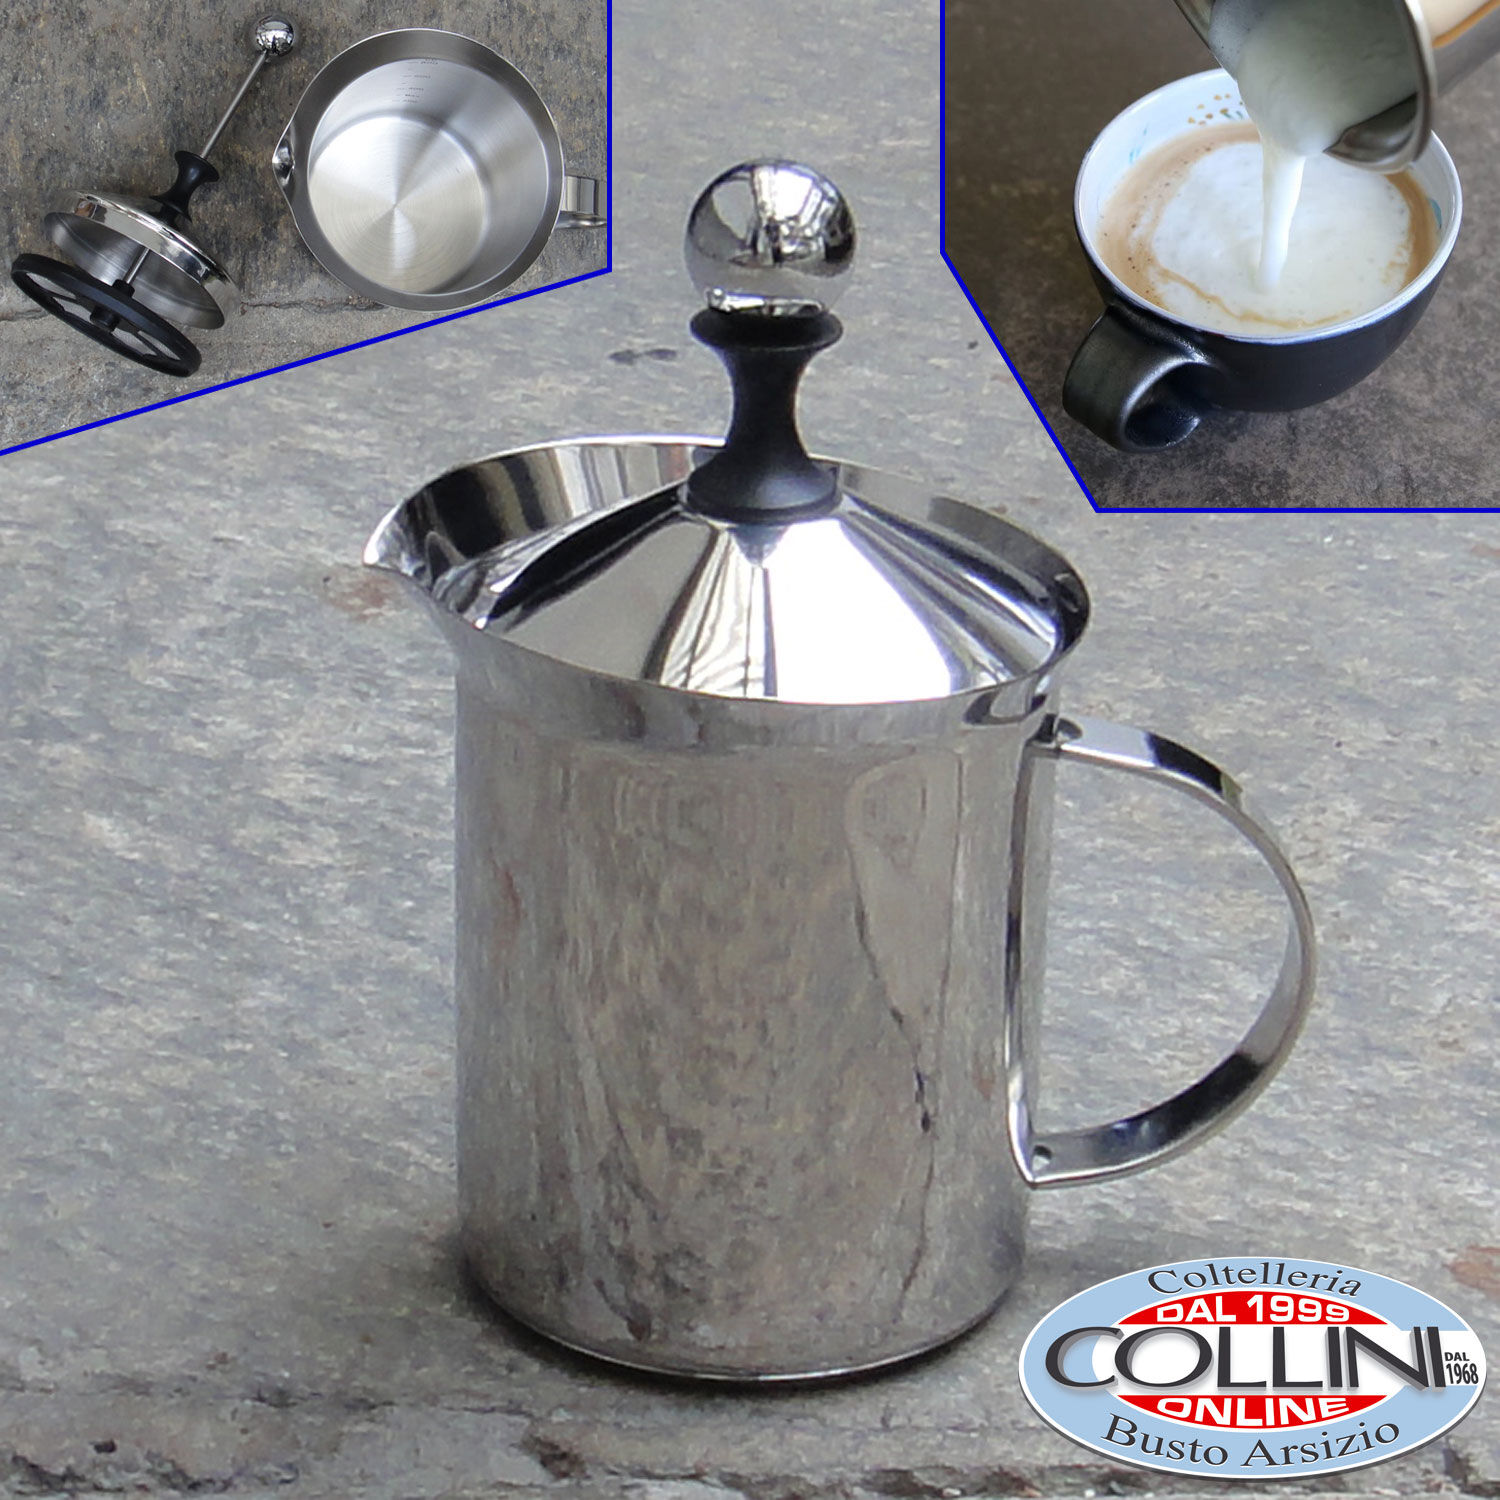 https://www.coltelleriacollini.com/media/catalog/product/cache/2d742e981ffa5c28990fe05a9b6044c9/image/62459ed1/cilio-classic-milk-frother-cappuccino-creamer.jpg